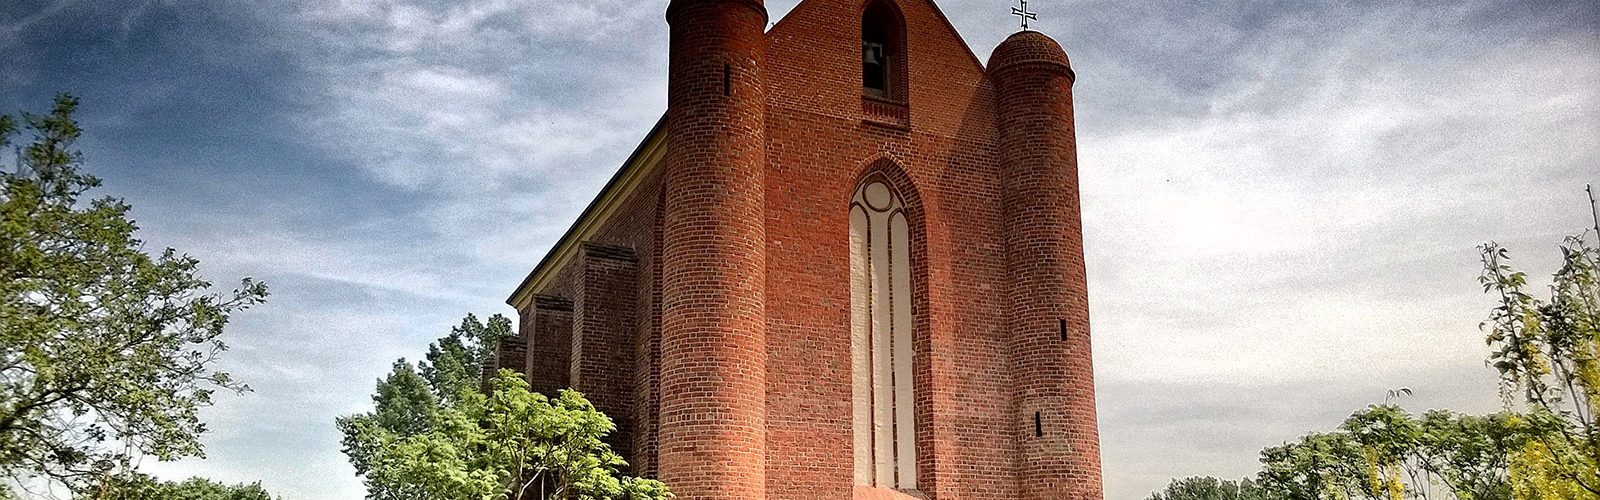 Kaplica w Chwarszczanach, 2016 rok. (fot. Jan M., lic. CC-BY-SA 3,0).